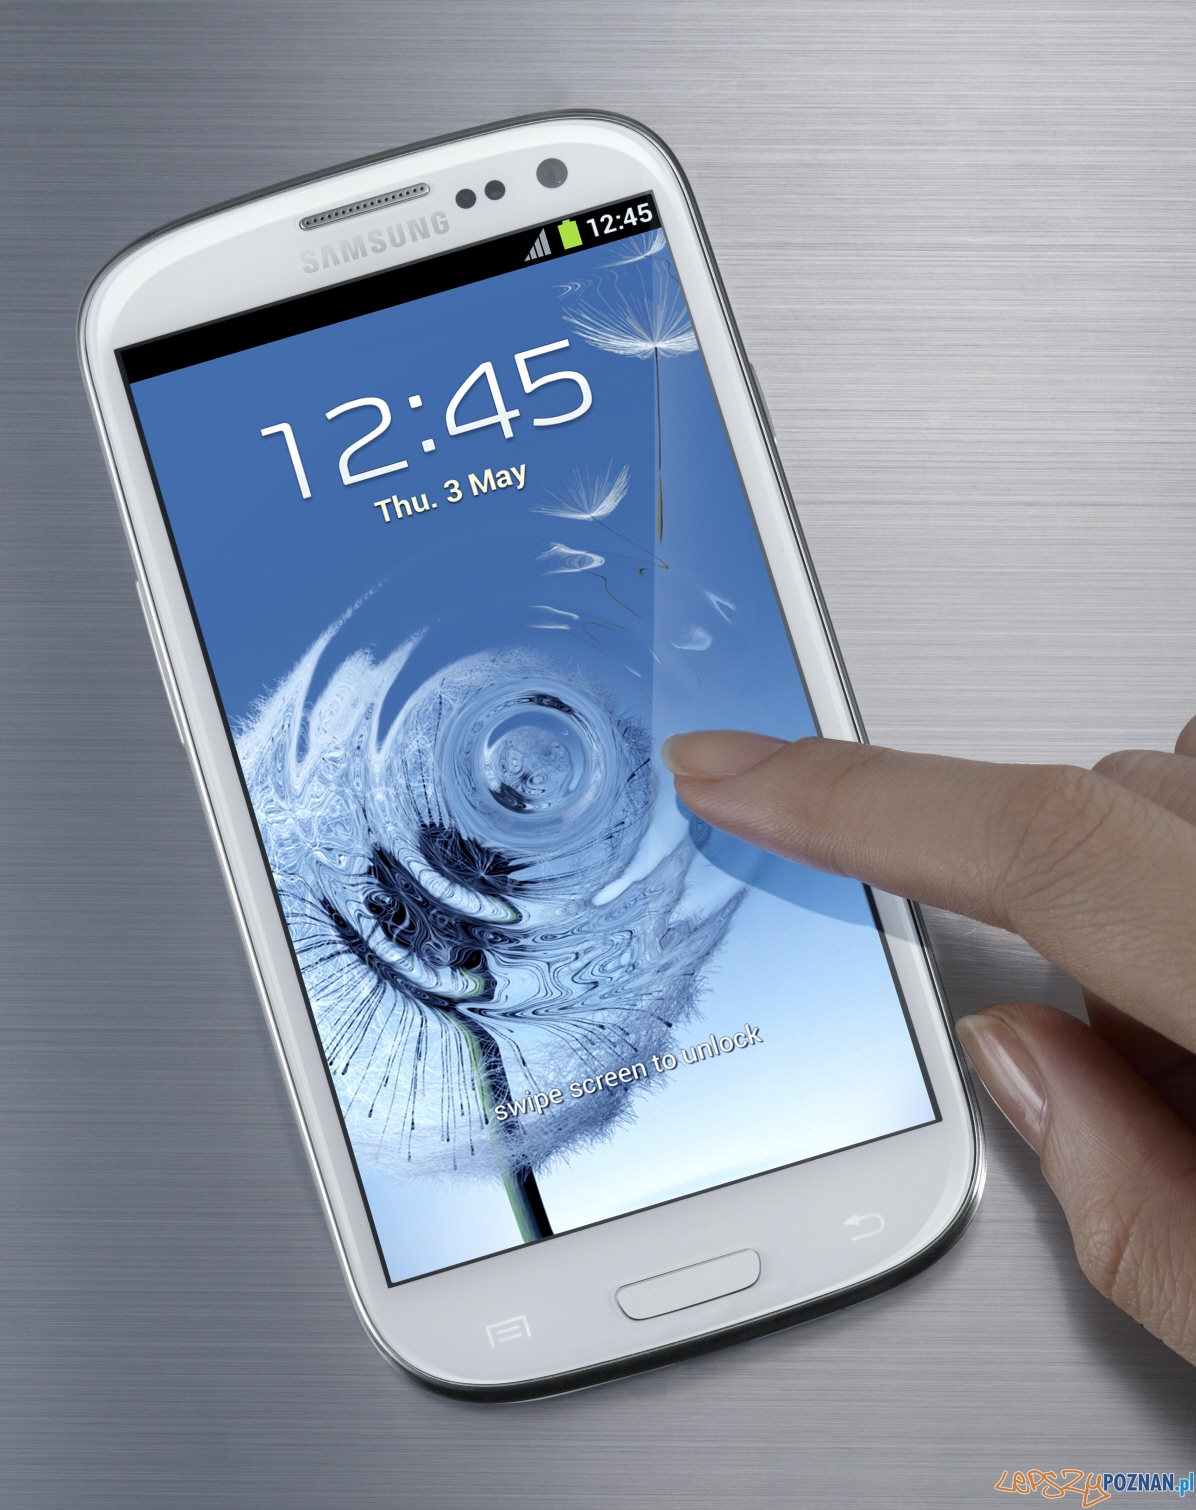 Samsung Galaxy S III  Foto: Samsung